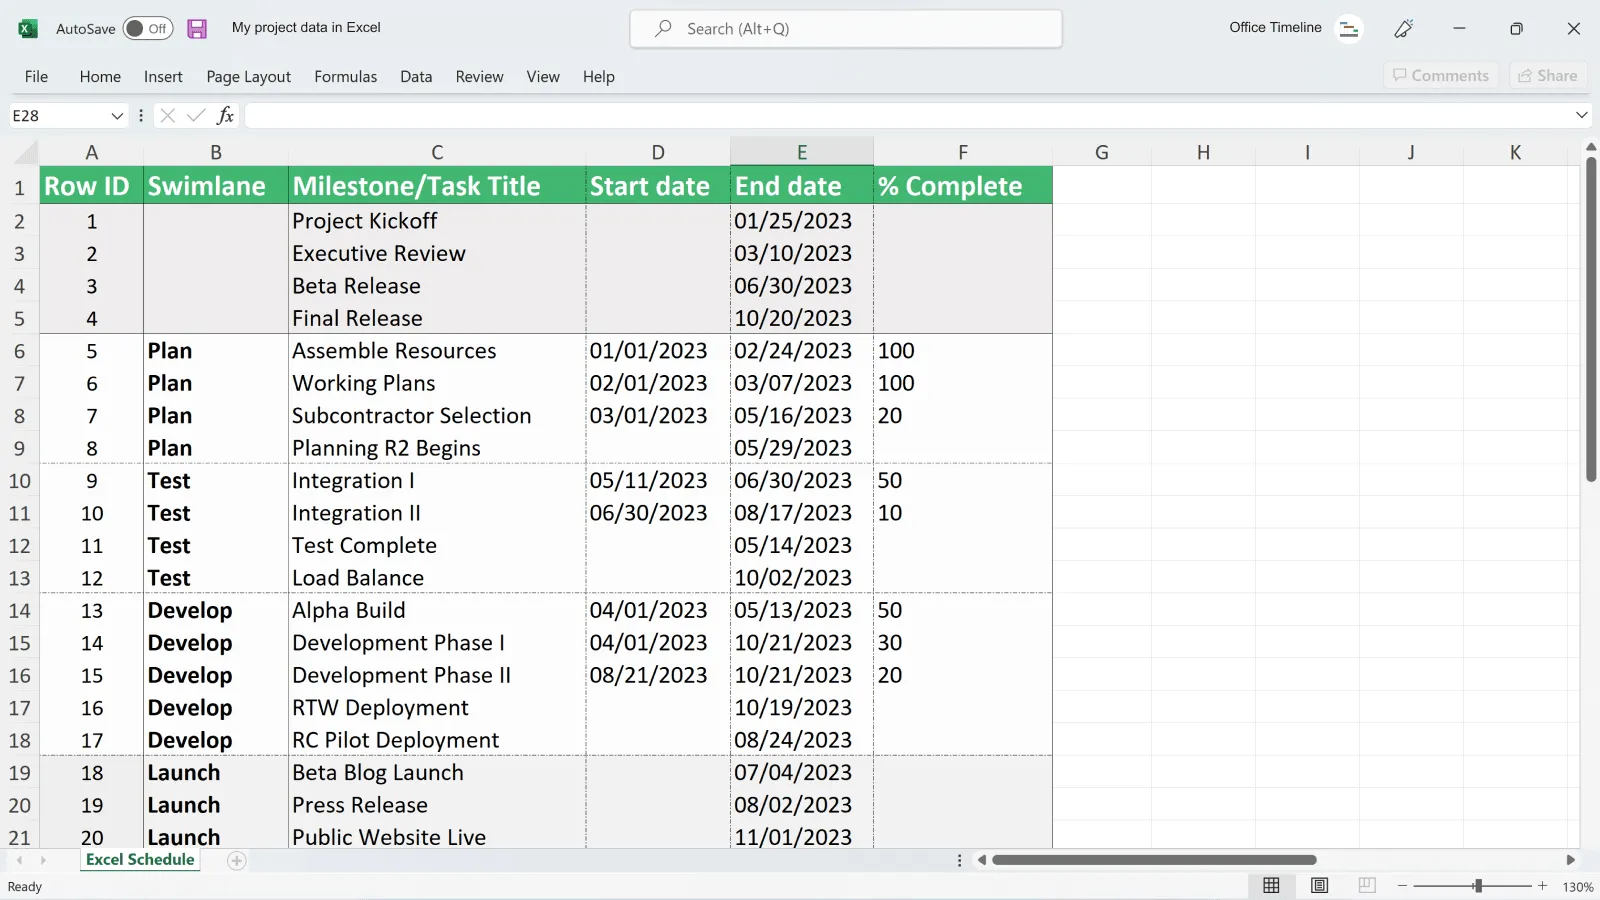 Données de projet dans Excel avant d'être importées dans Office Timeline Pro